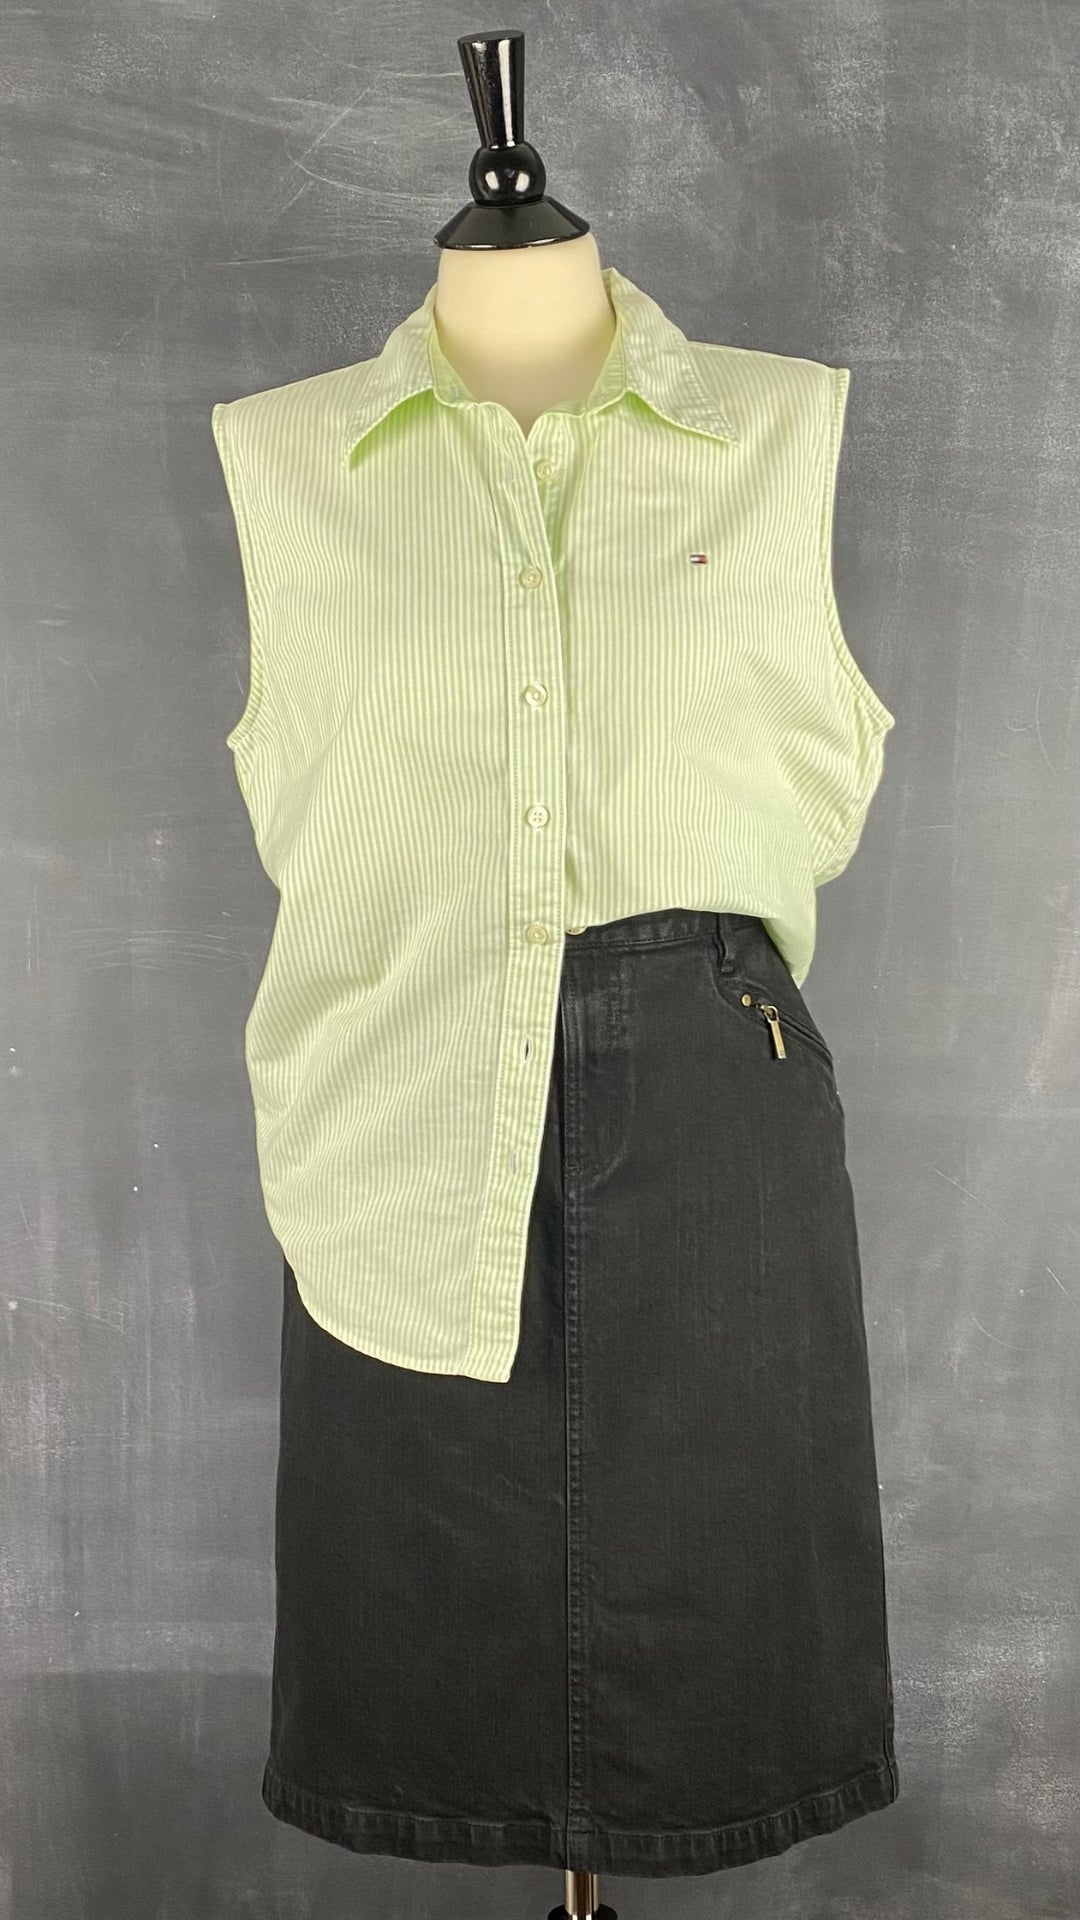 Chemisier à rayures vert et crème Tommy Hilfiger, taille m-l. Vue de l'agencement avec la jupe en jeans noire Lauren Ralph Lauren.